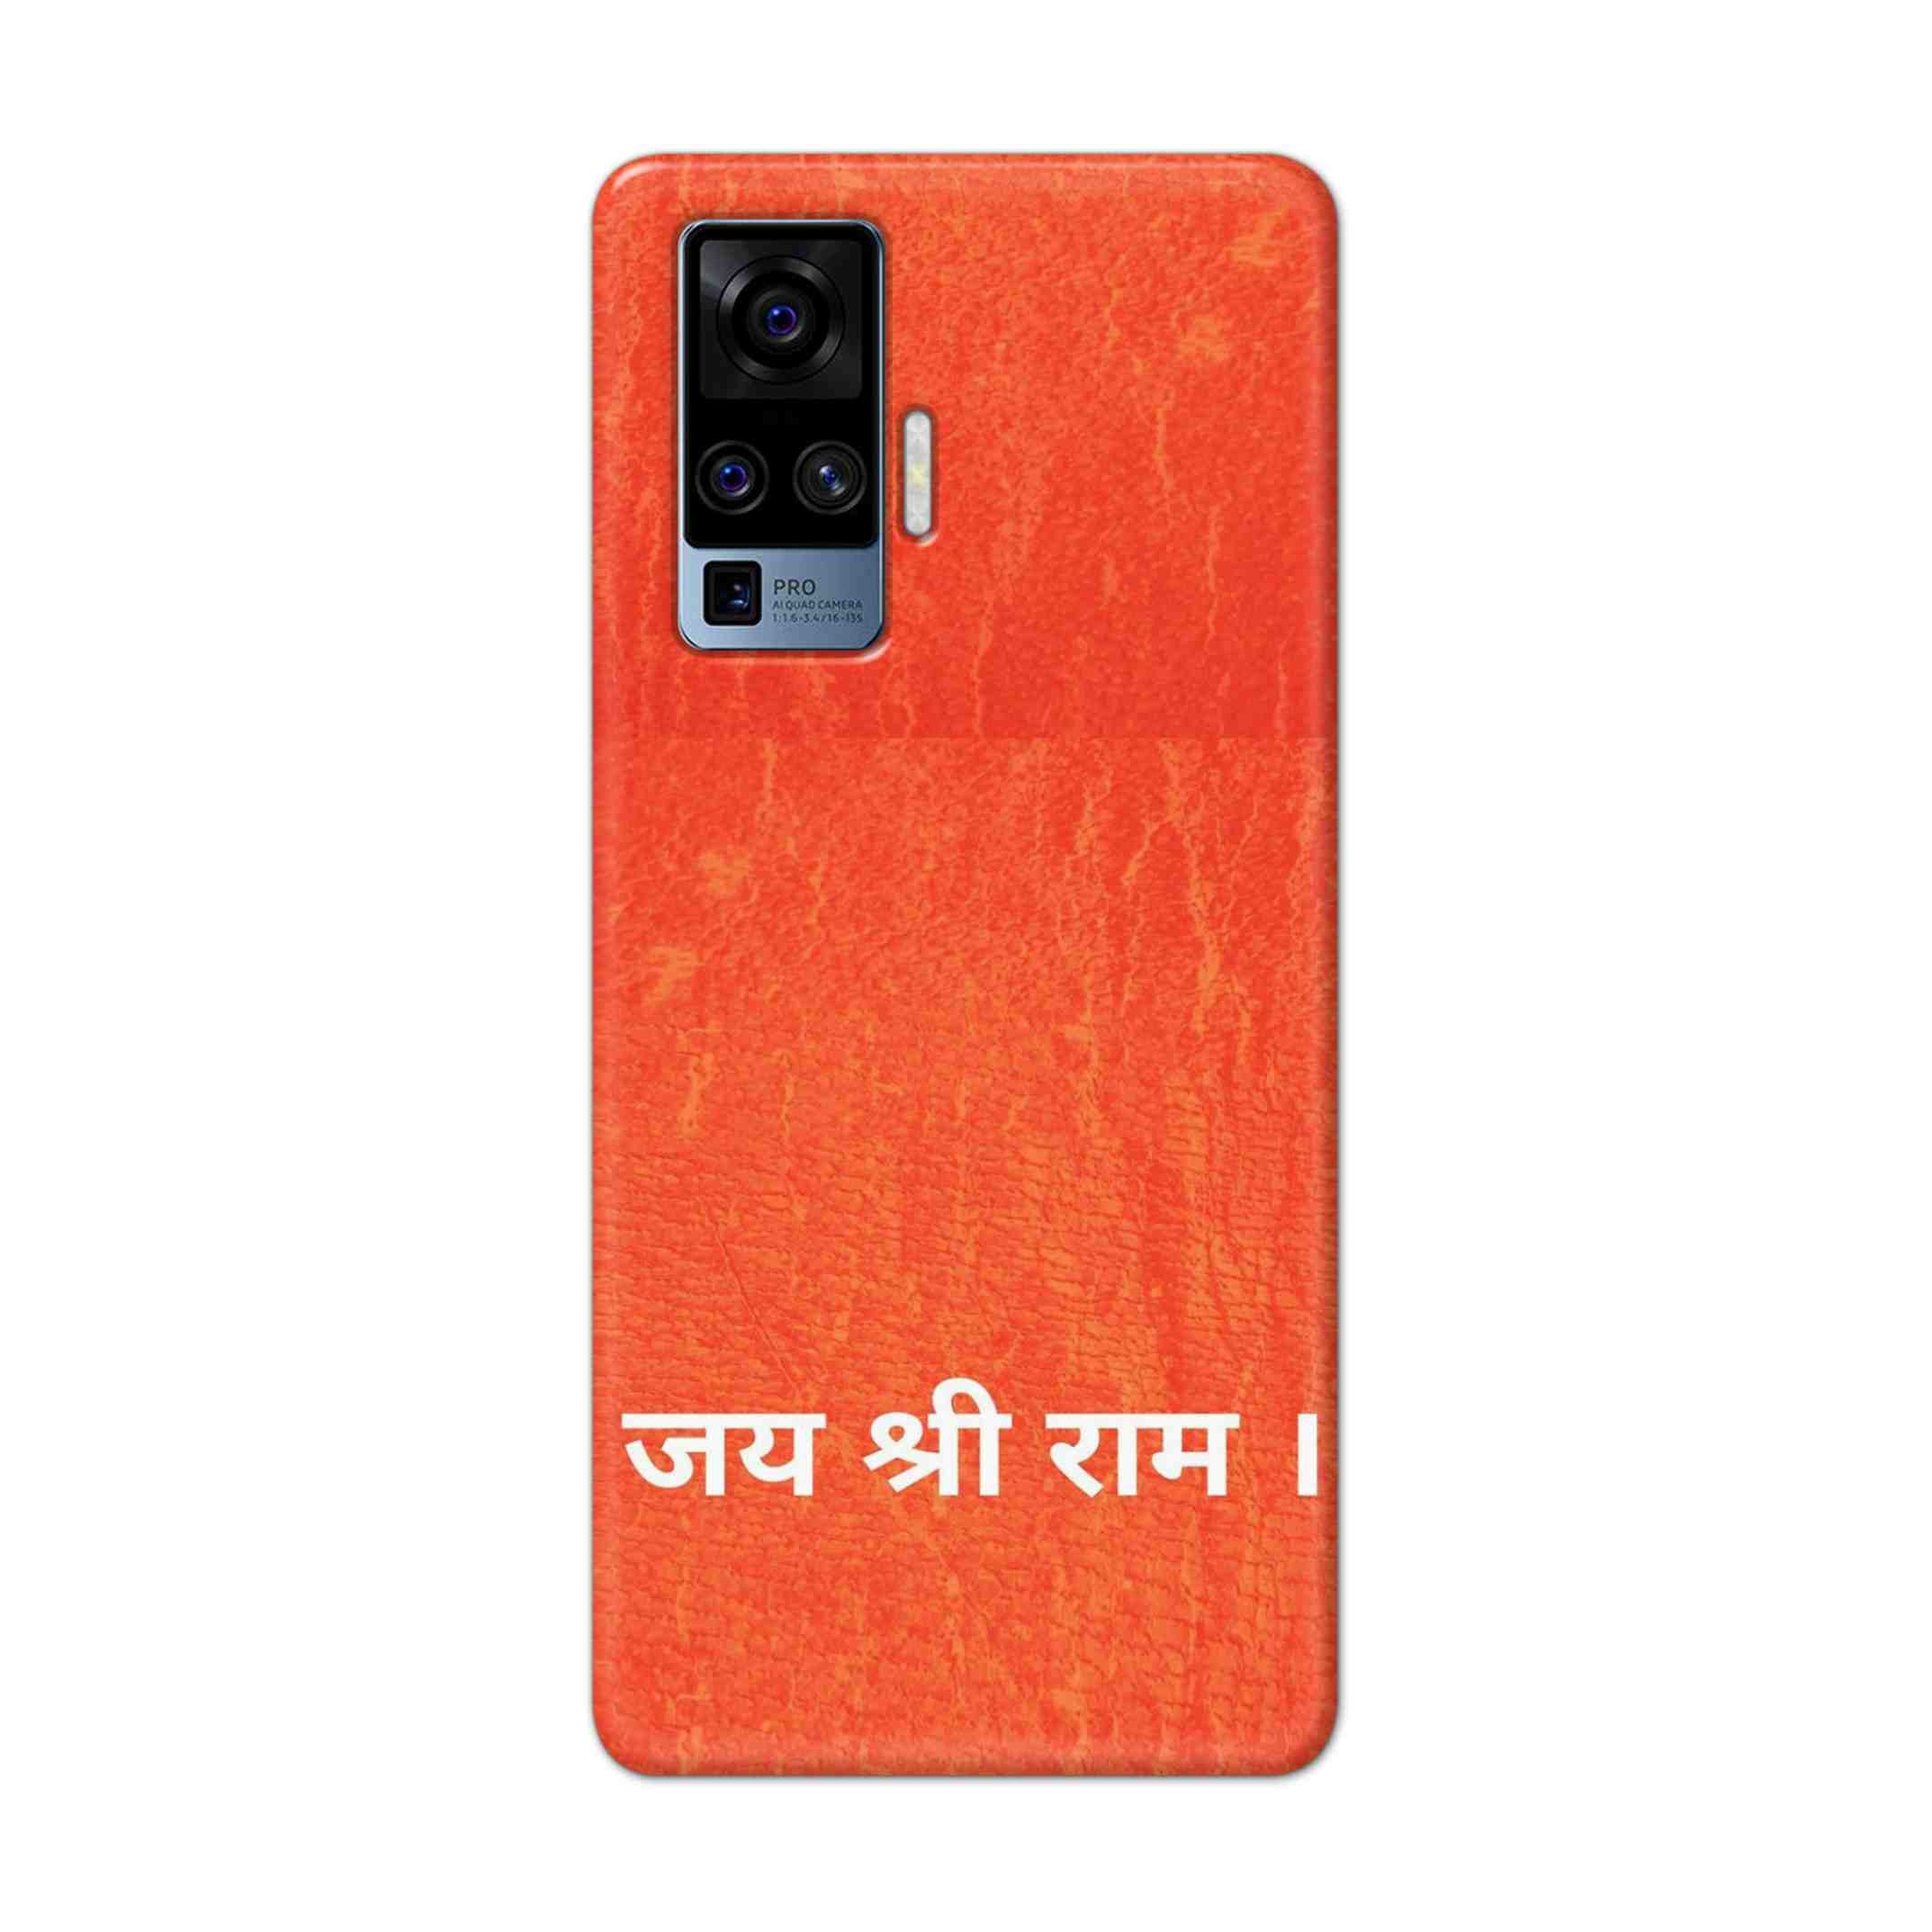 Buy Jai Shree Ram Hard Back Mobile Phone Case/Cover For Vivo X50 Pro Online